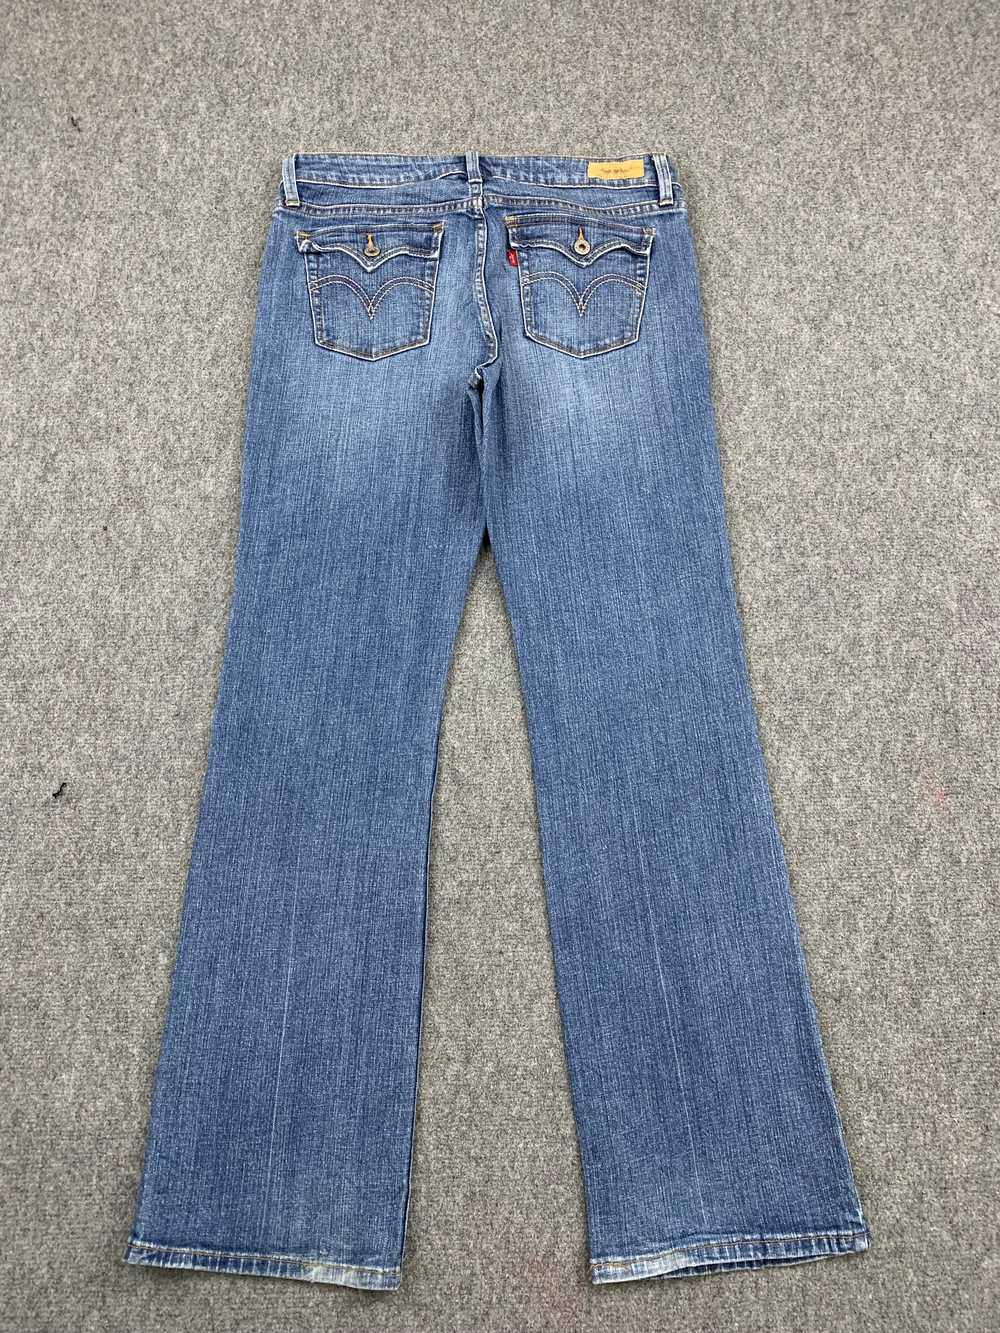 Vintage - Vintage Levis 545 Flared Bootcut Jeans - image 3